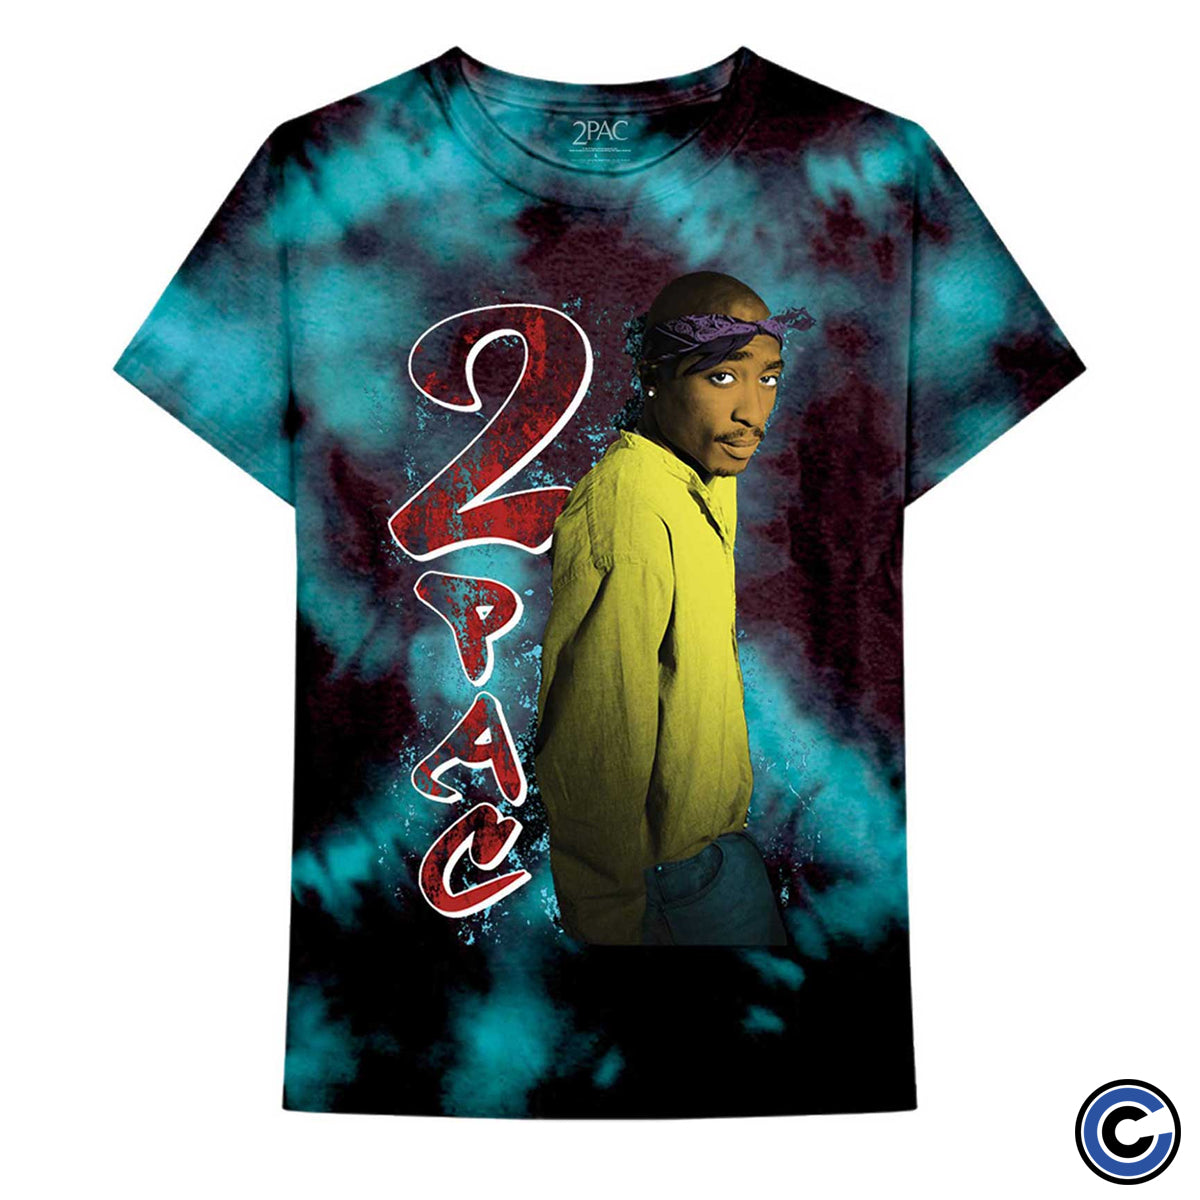 Tupac "Vintage Dip Dye" Shirt